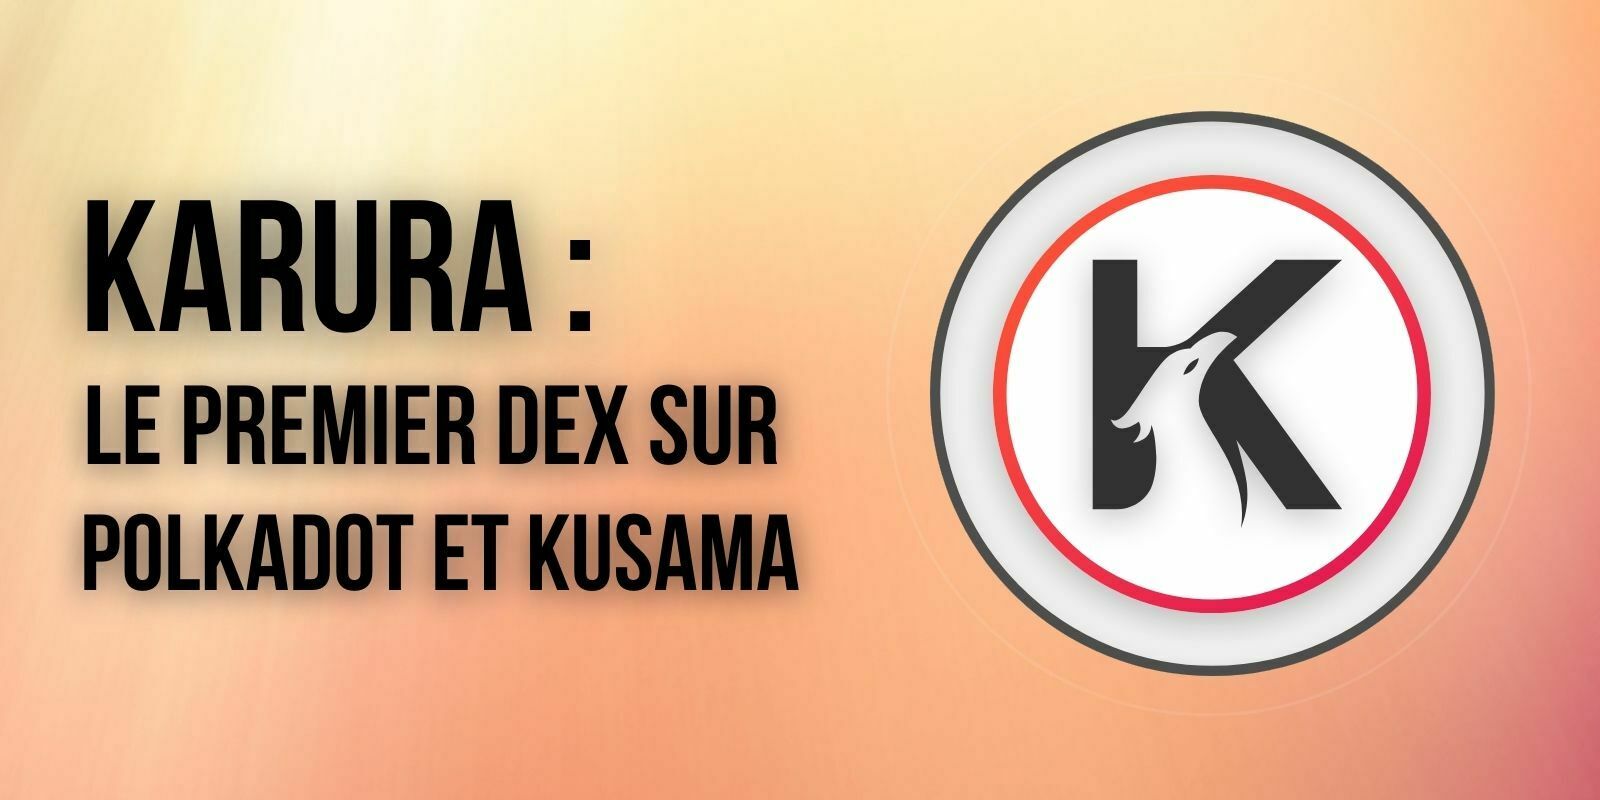 La para-chaîne Karura déploie le premier DEX du réseau Kusama (KSM)